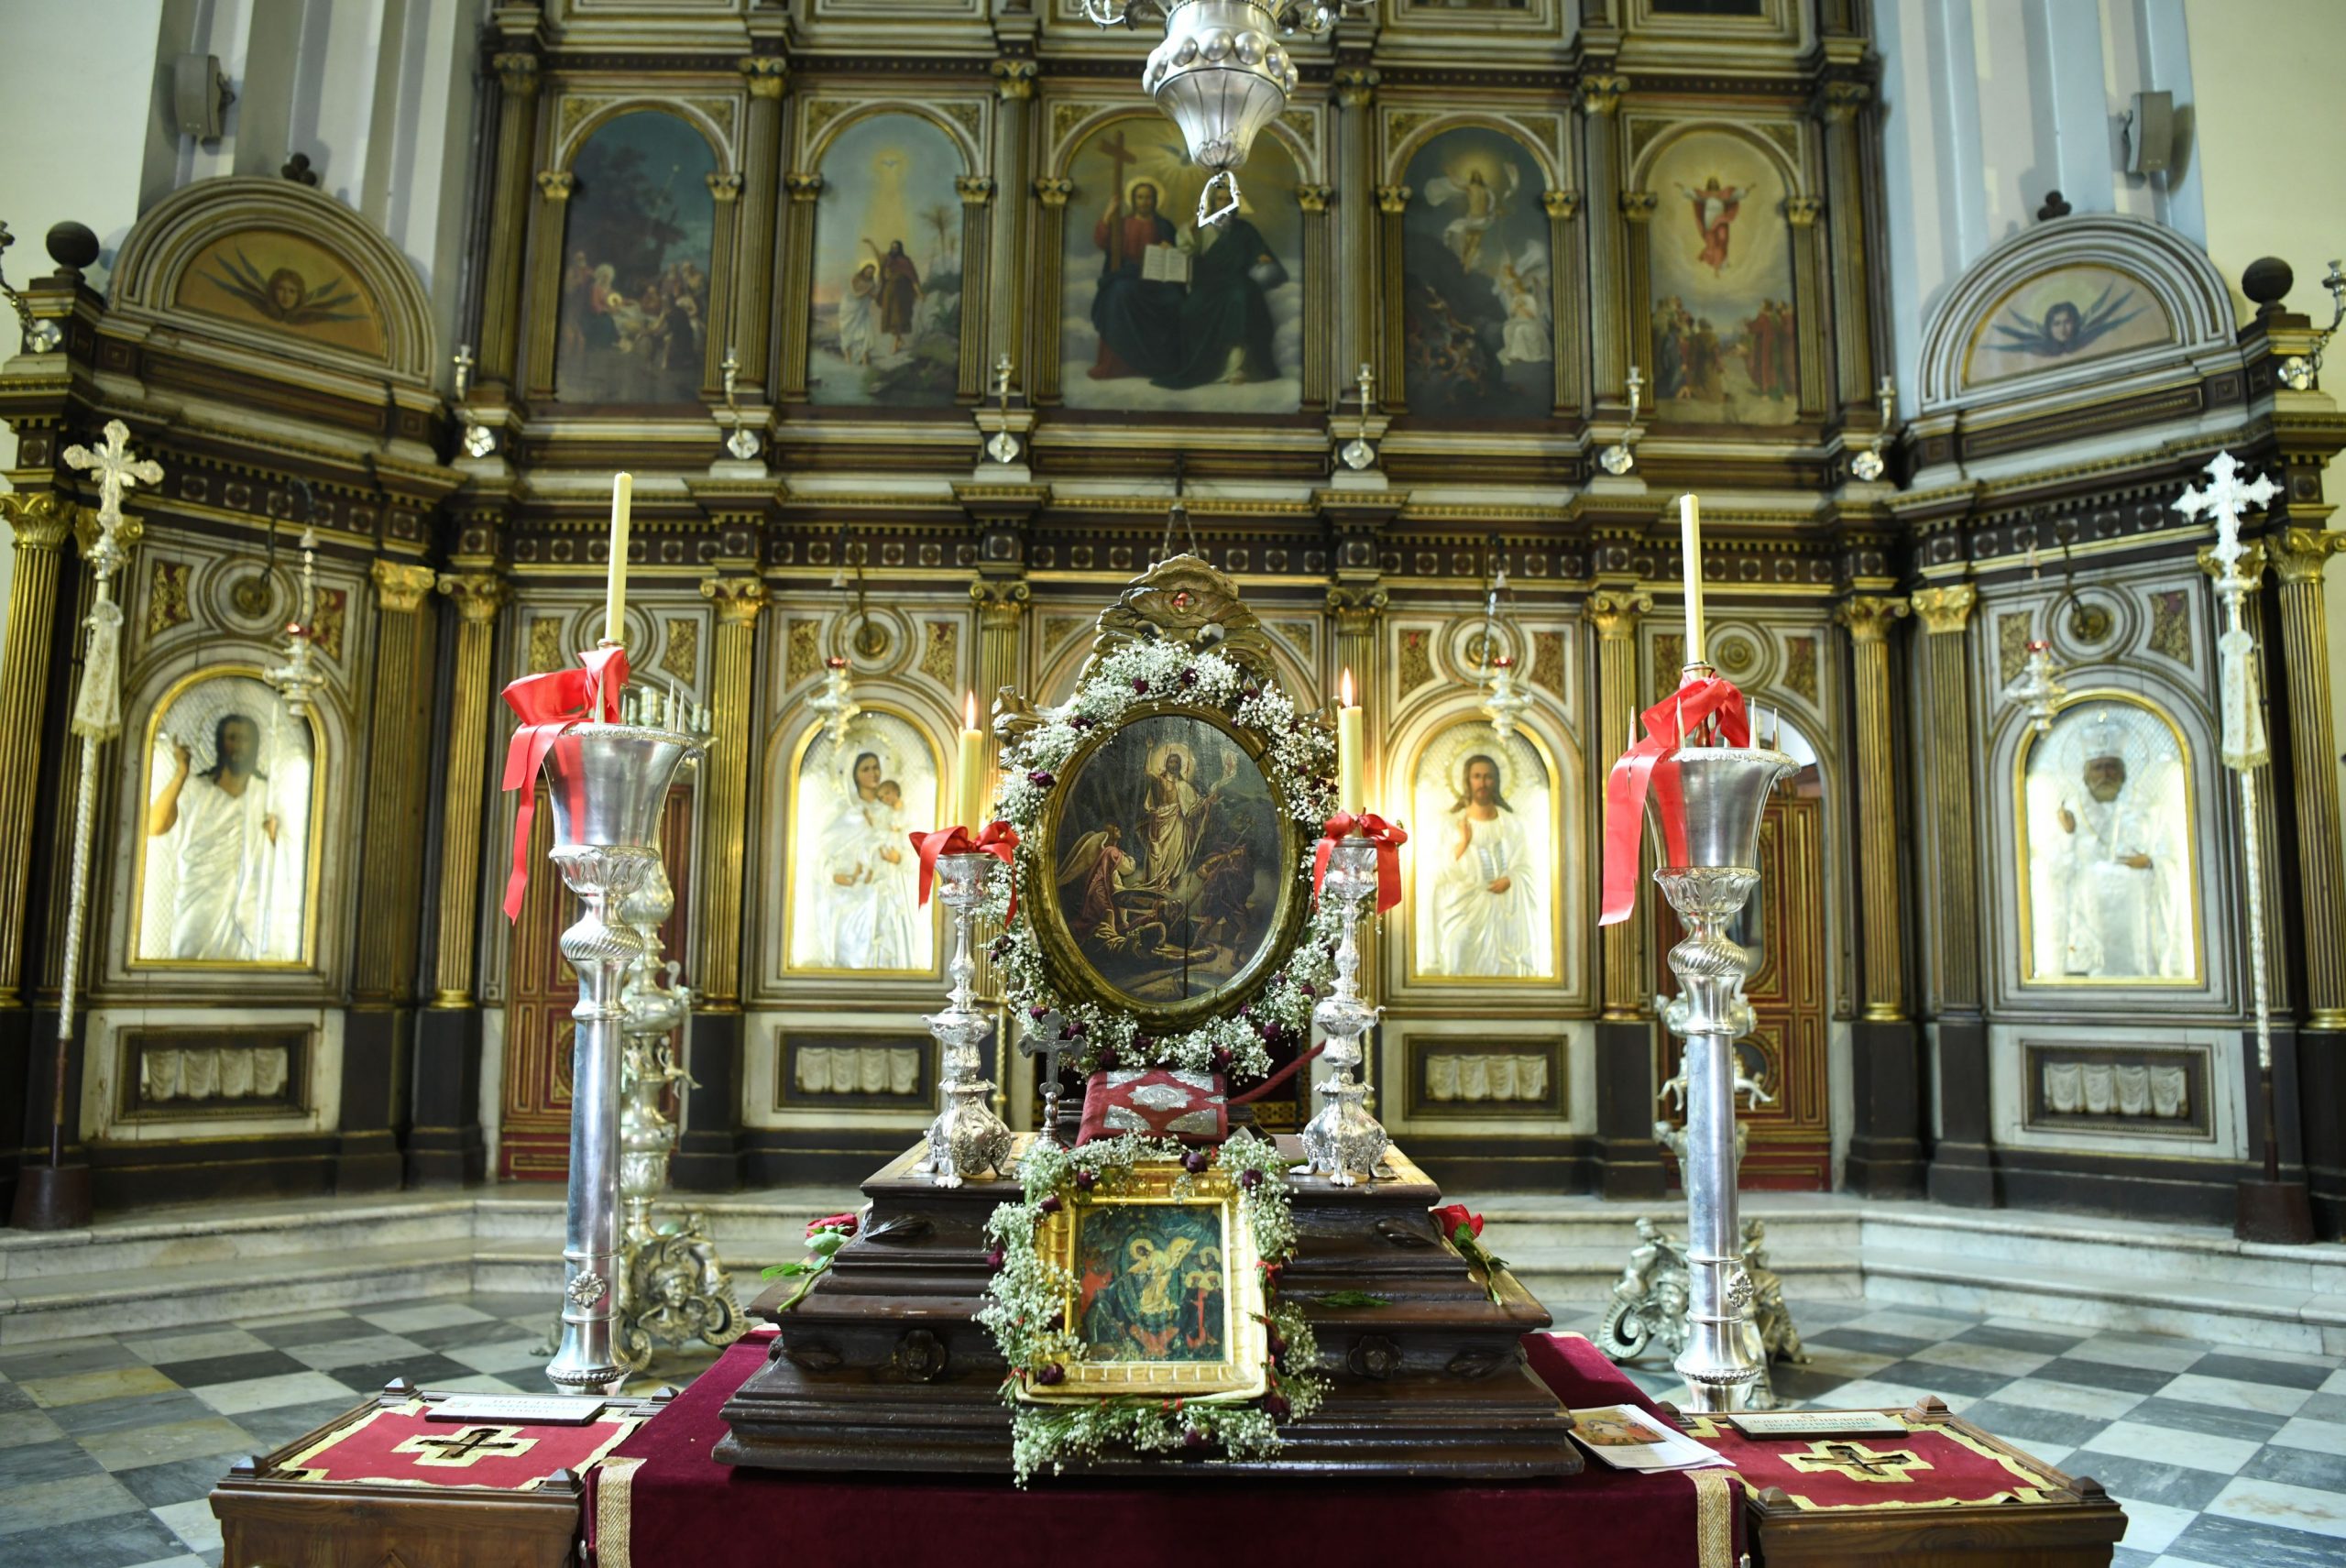 Crkva Svetog Nikole Kotor Crna Gora